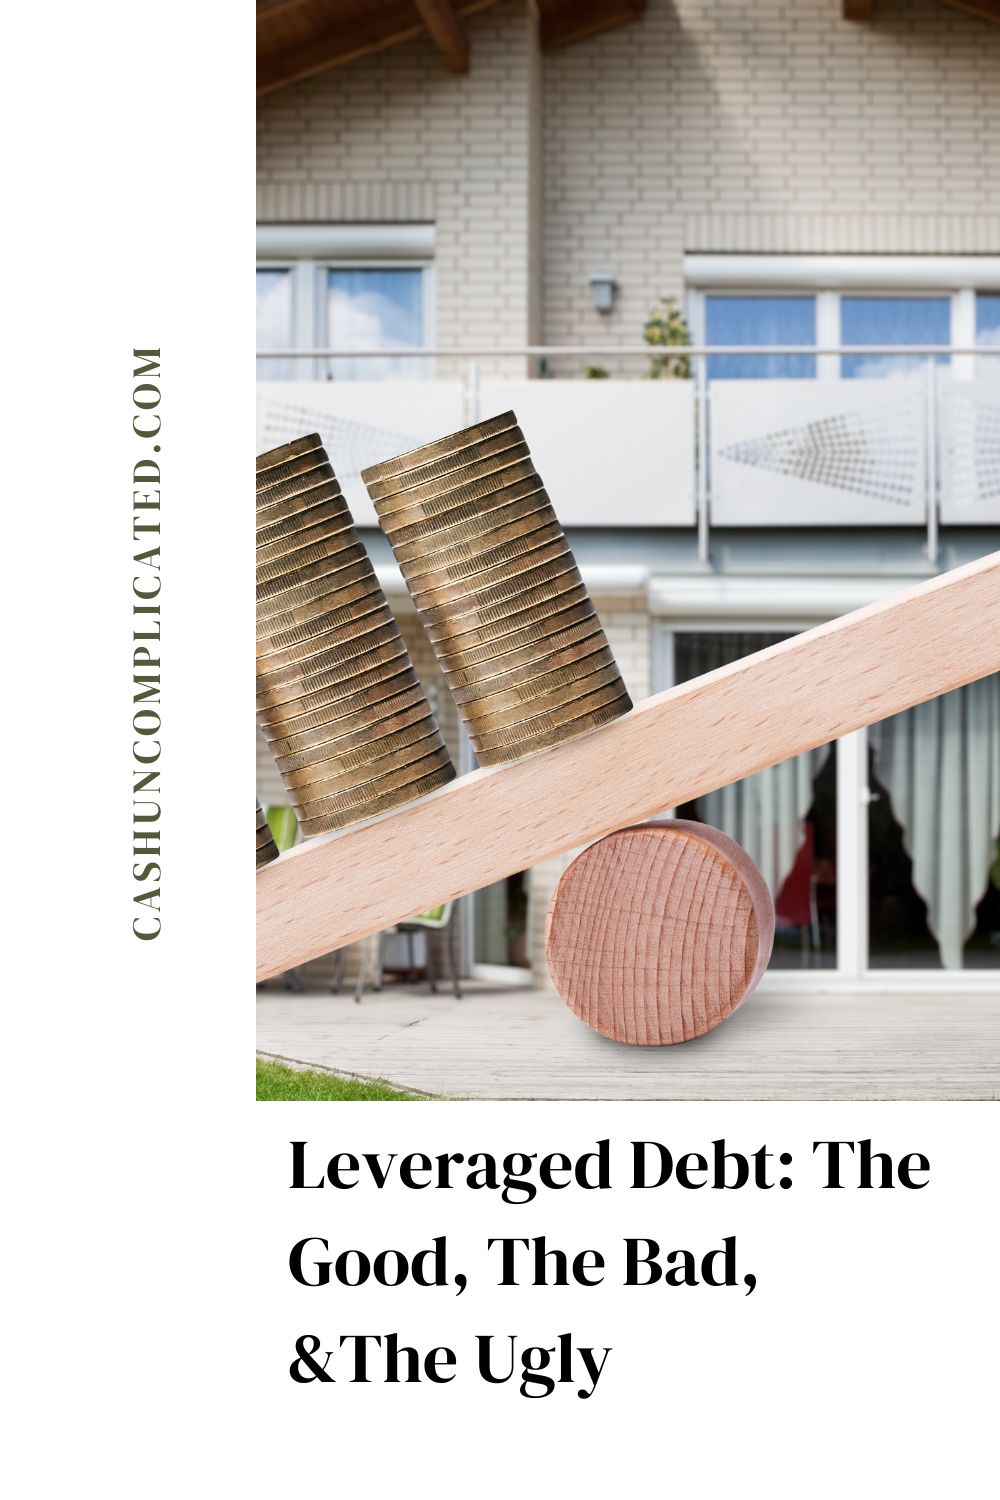 Leveraged debt